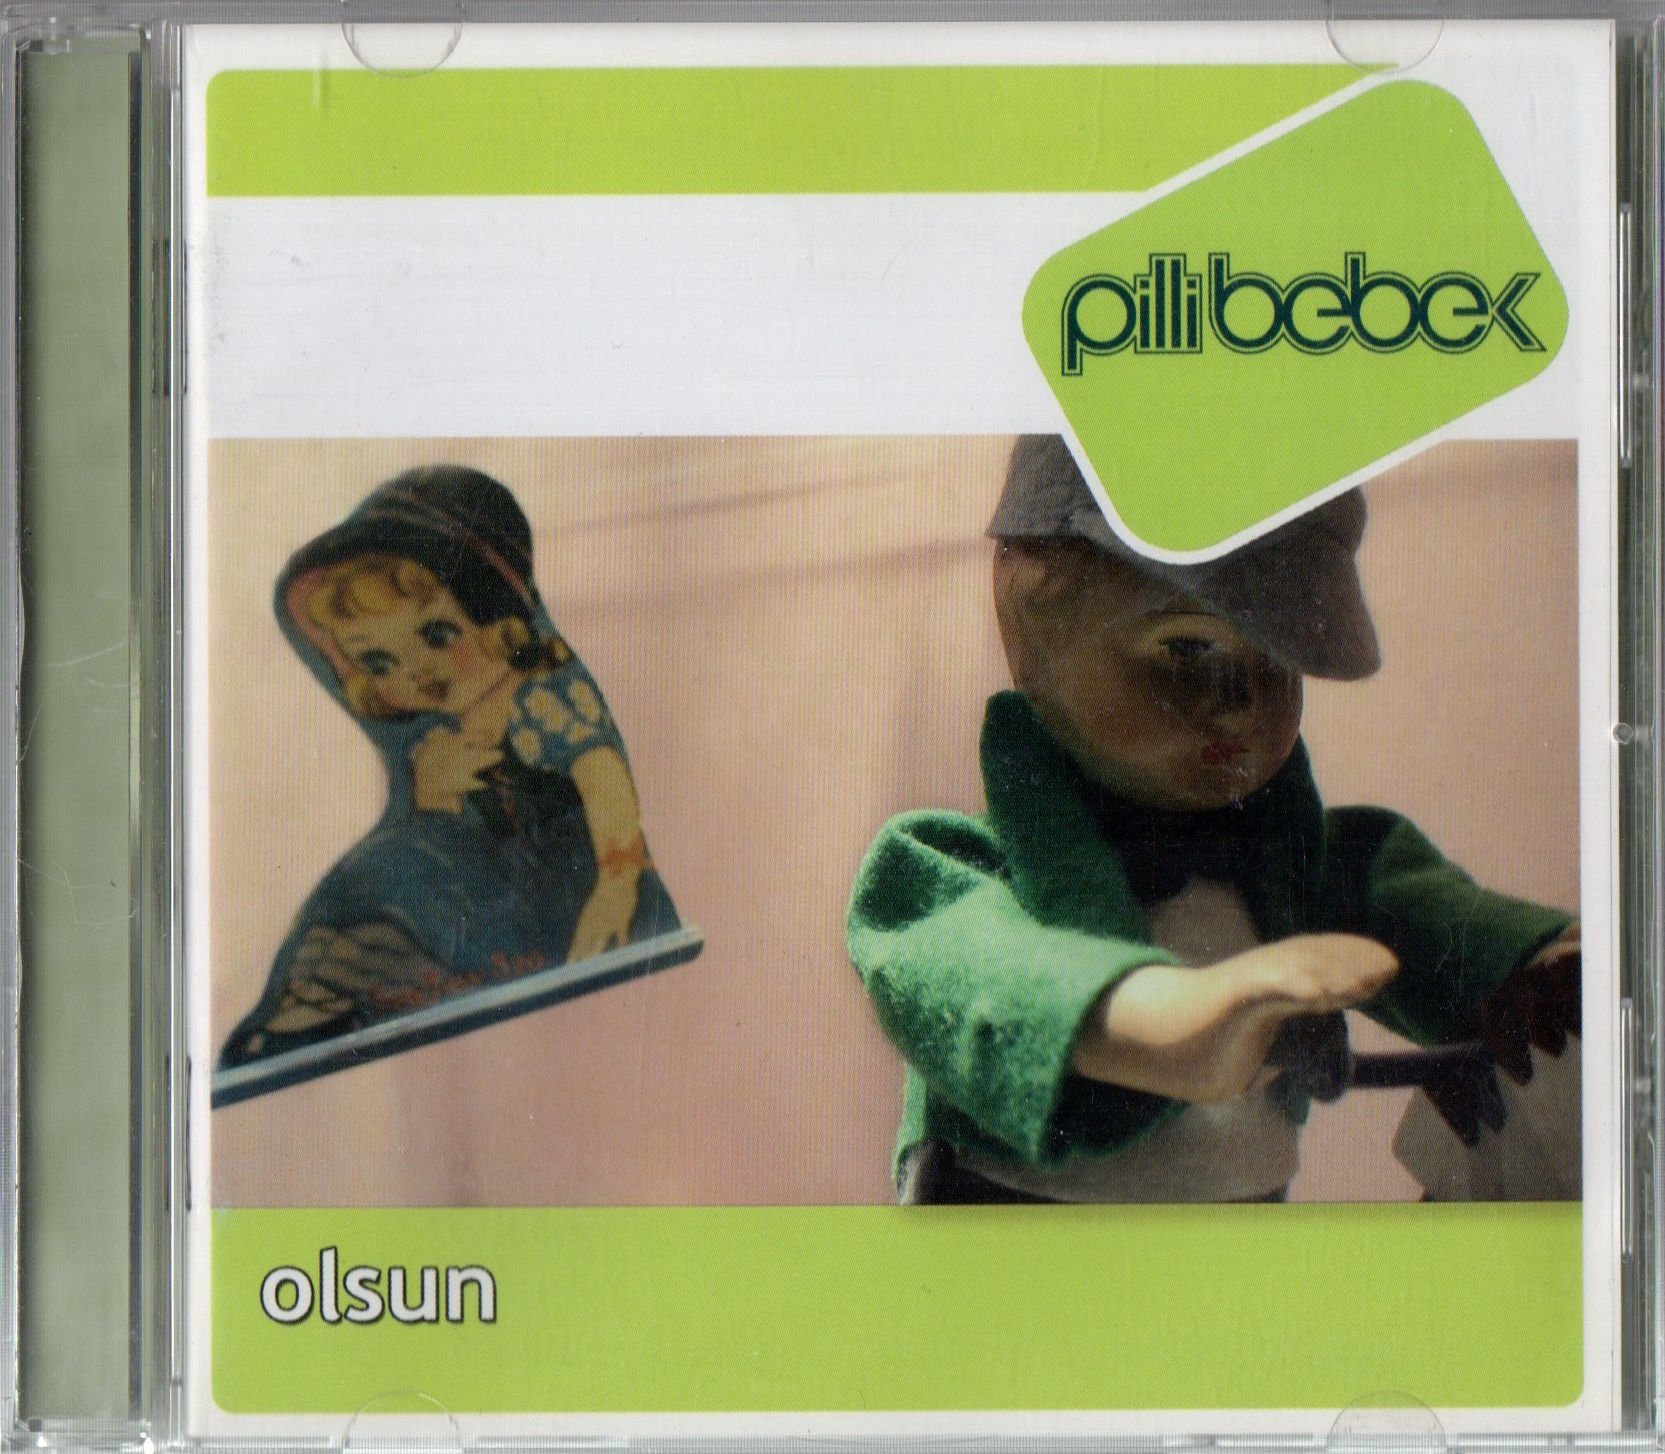 PİLLİ BEBEK - OLSUN (2007) - CD 2.EL